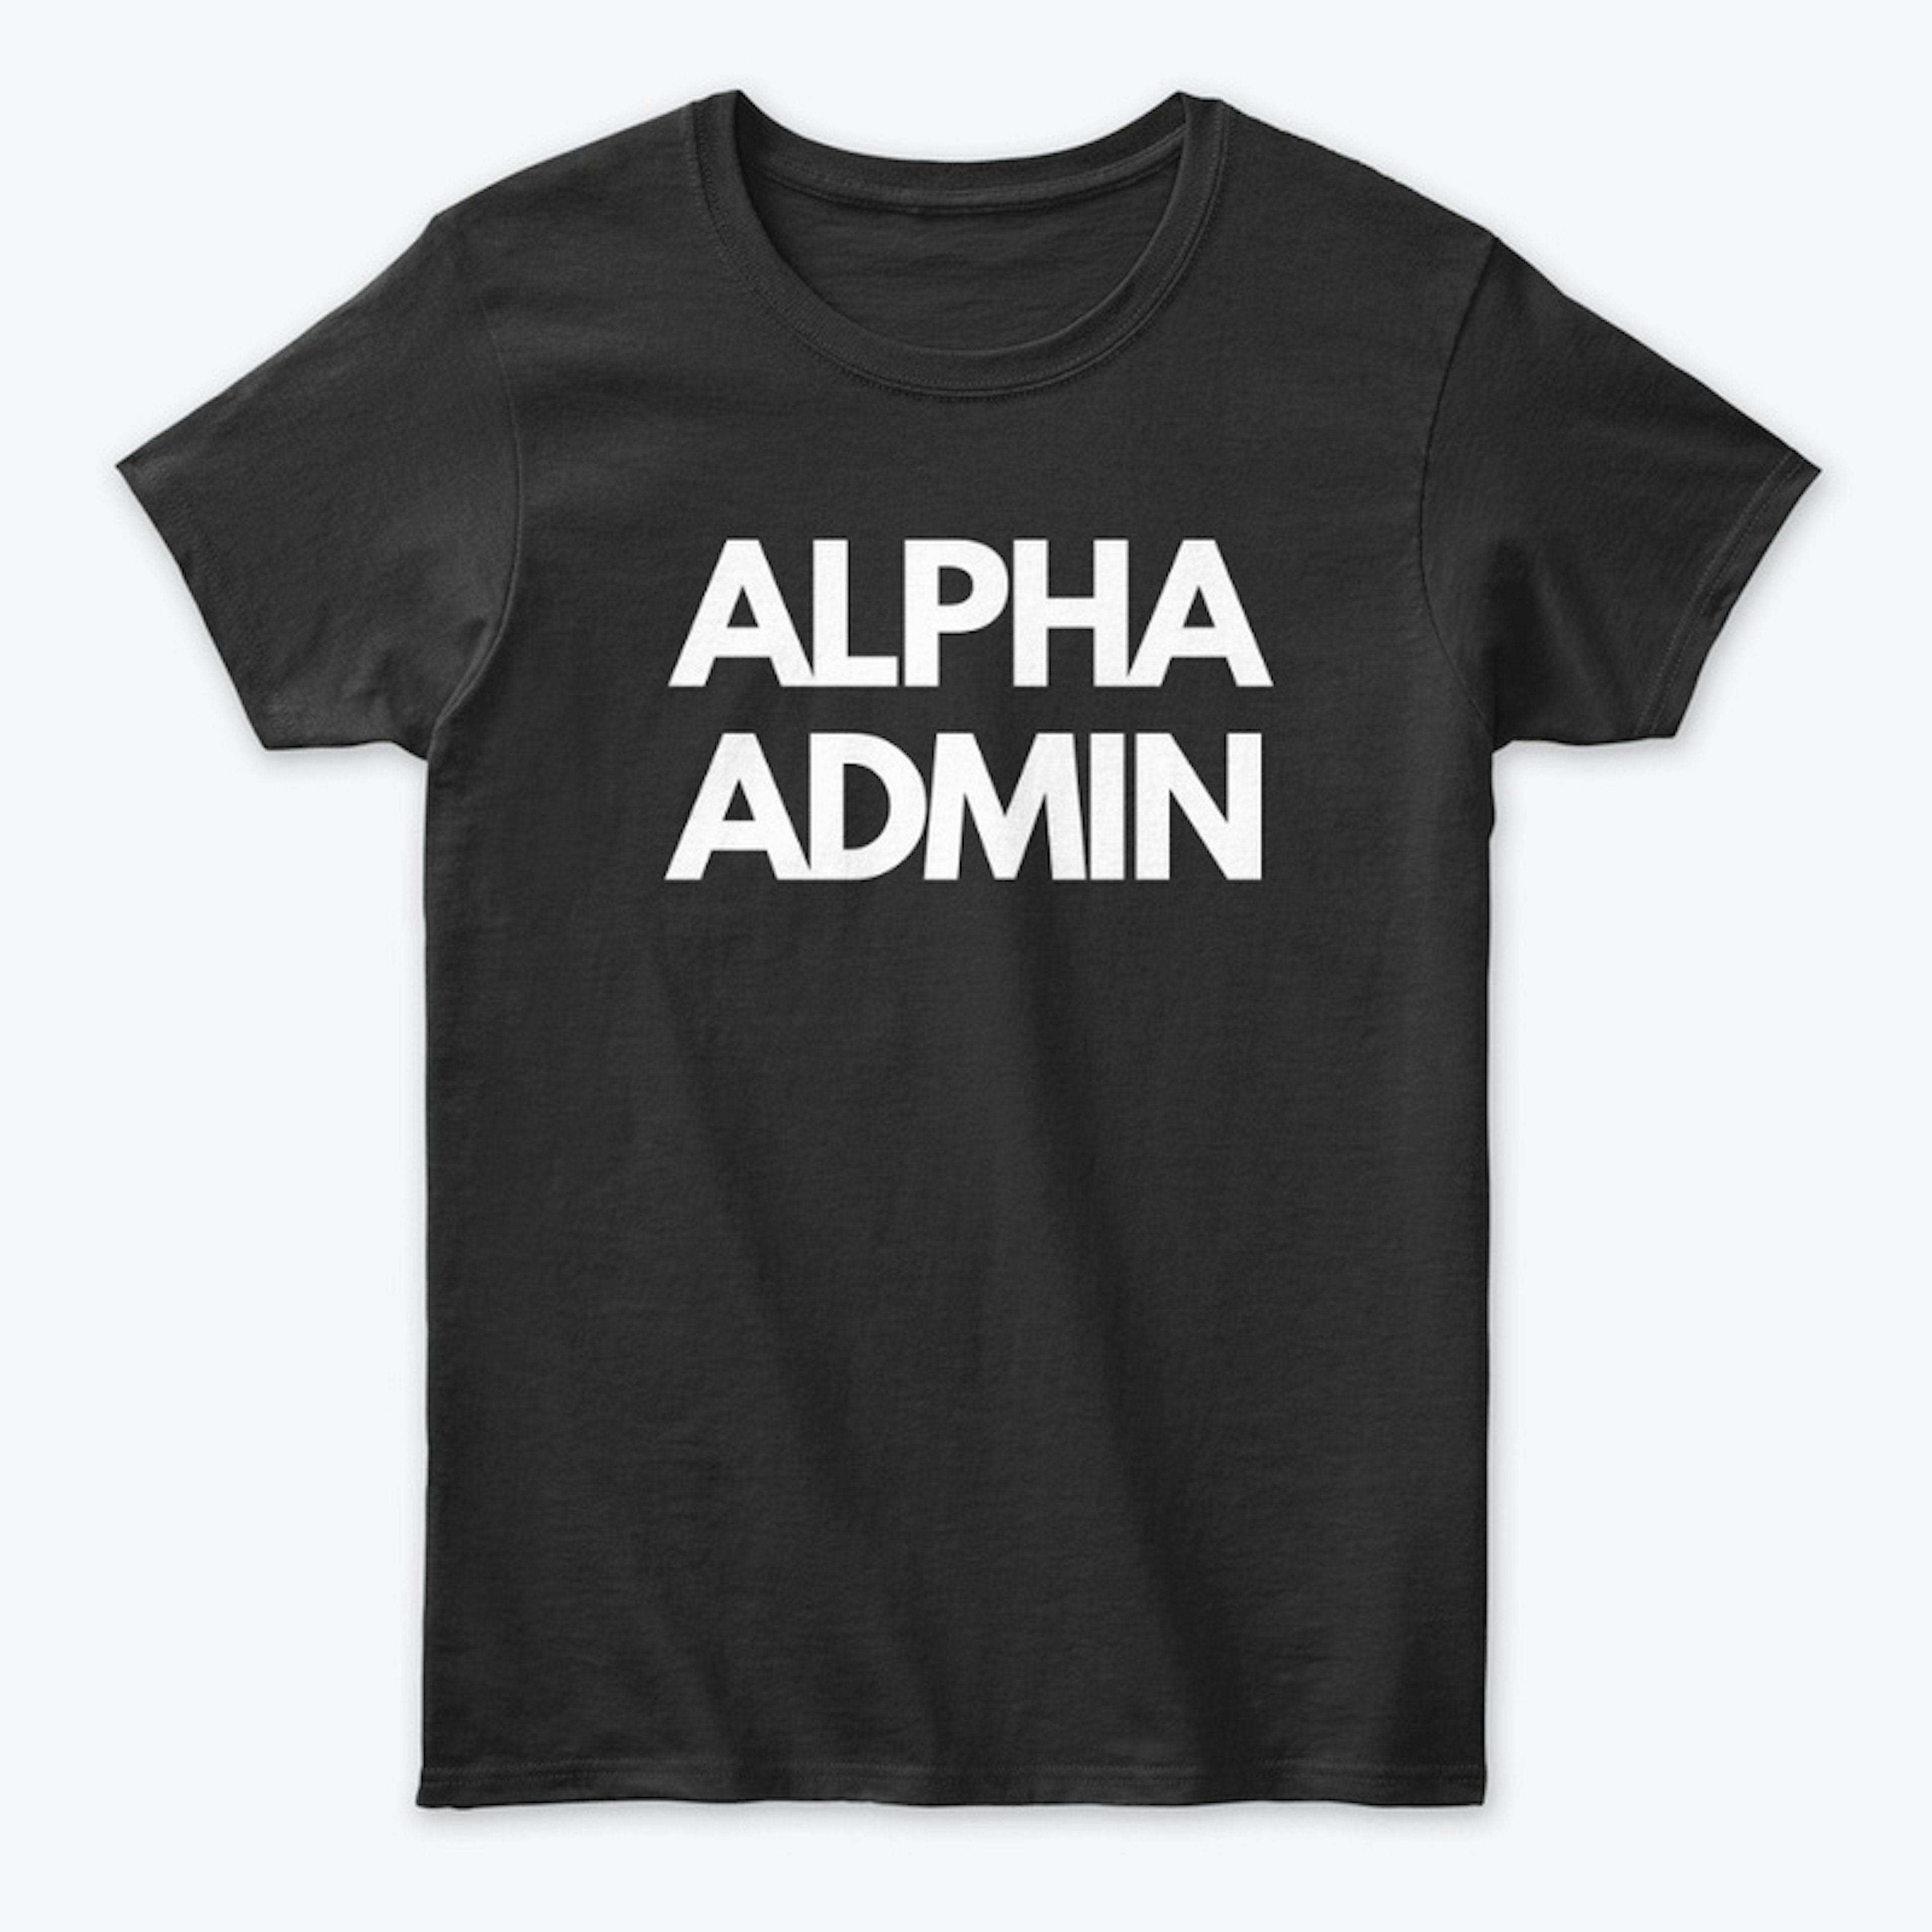 Alpha Admin Tee